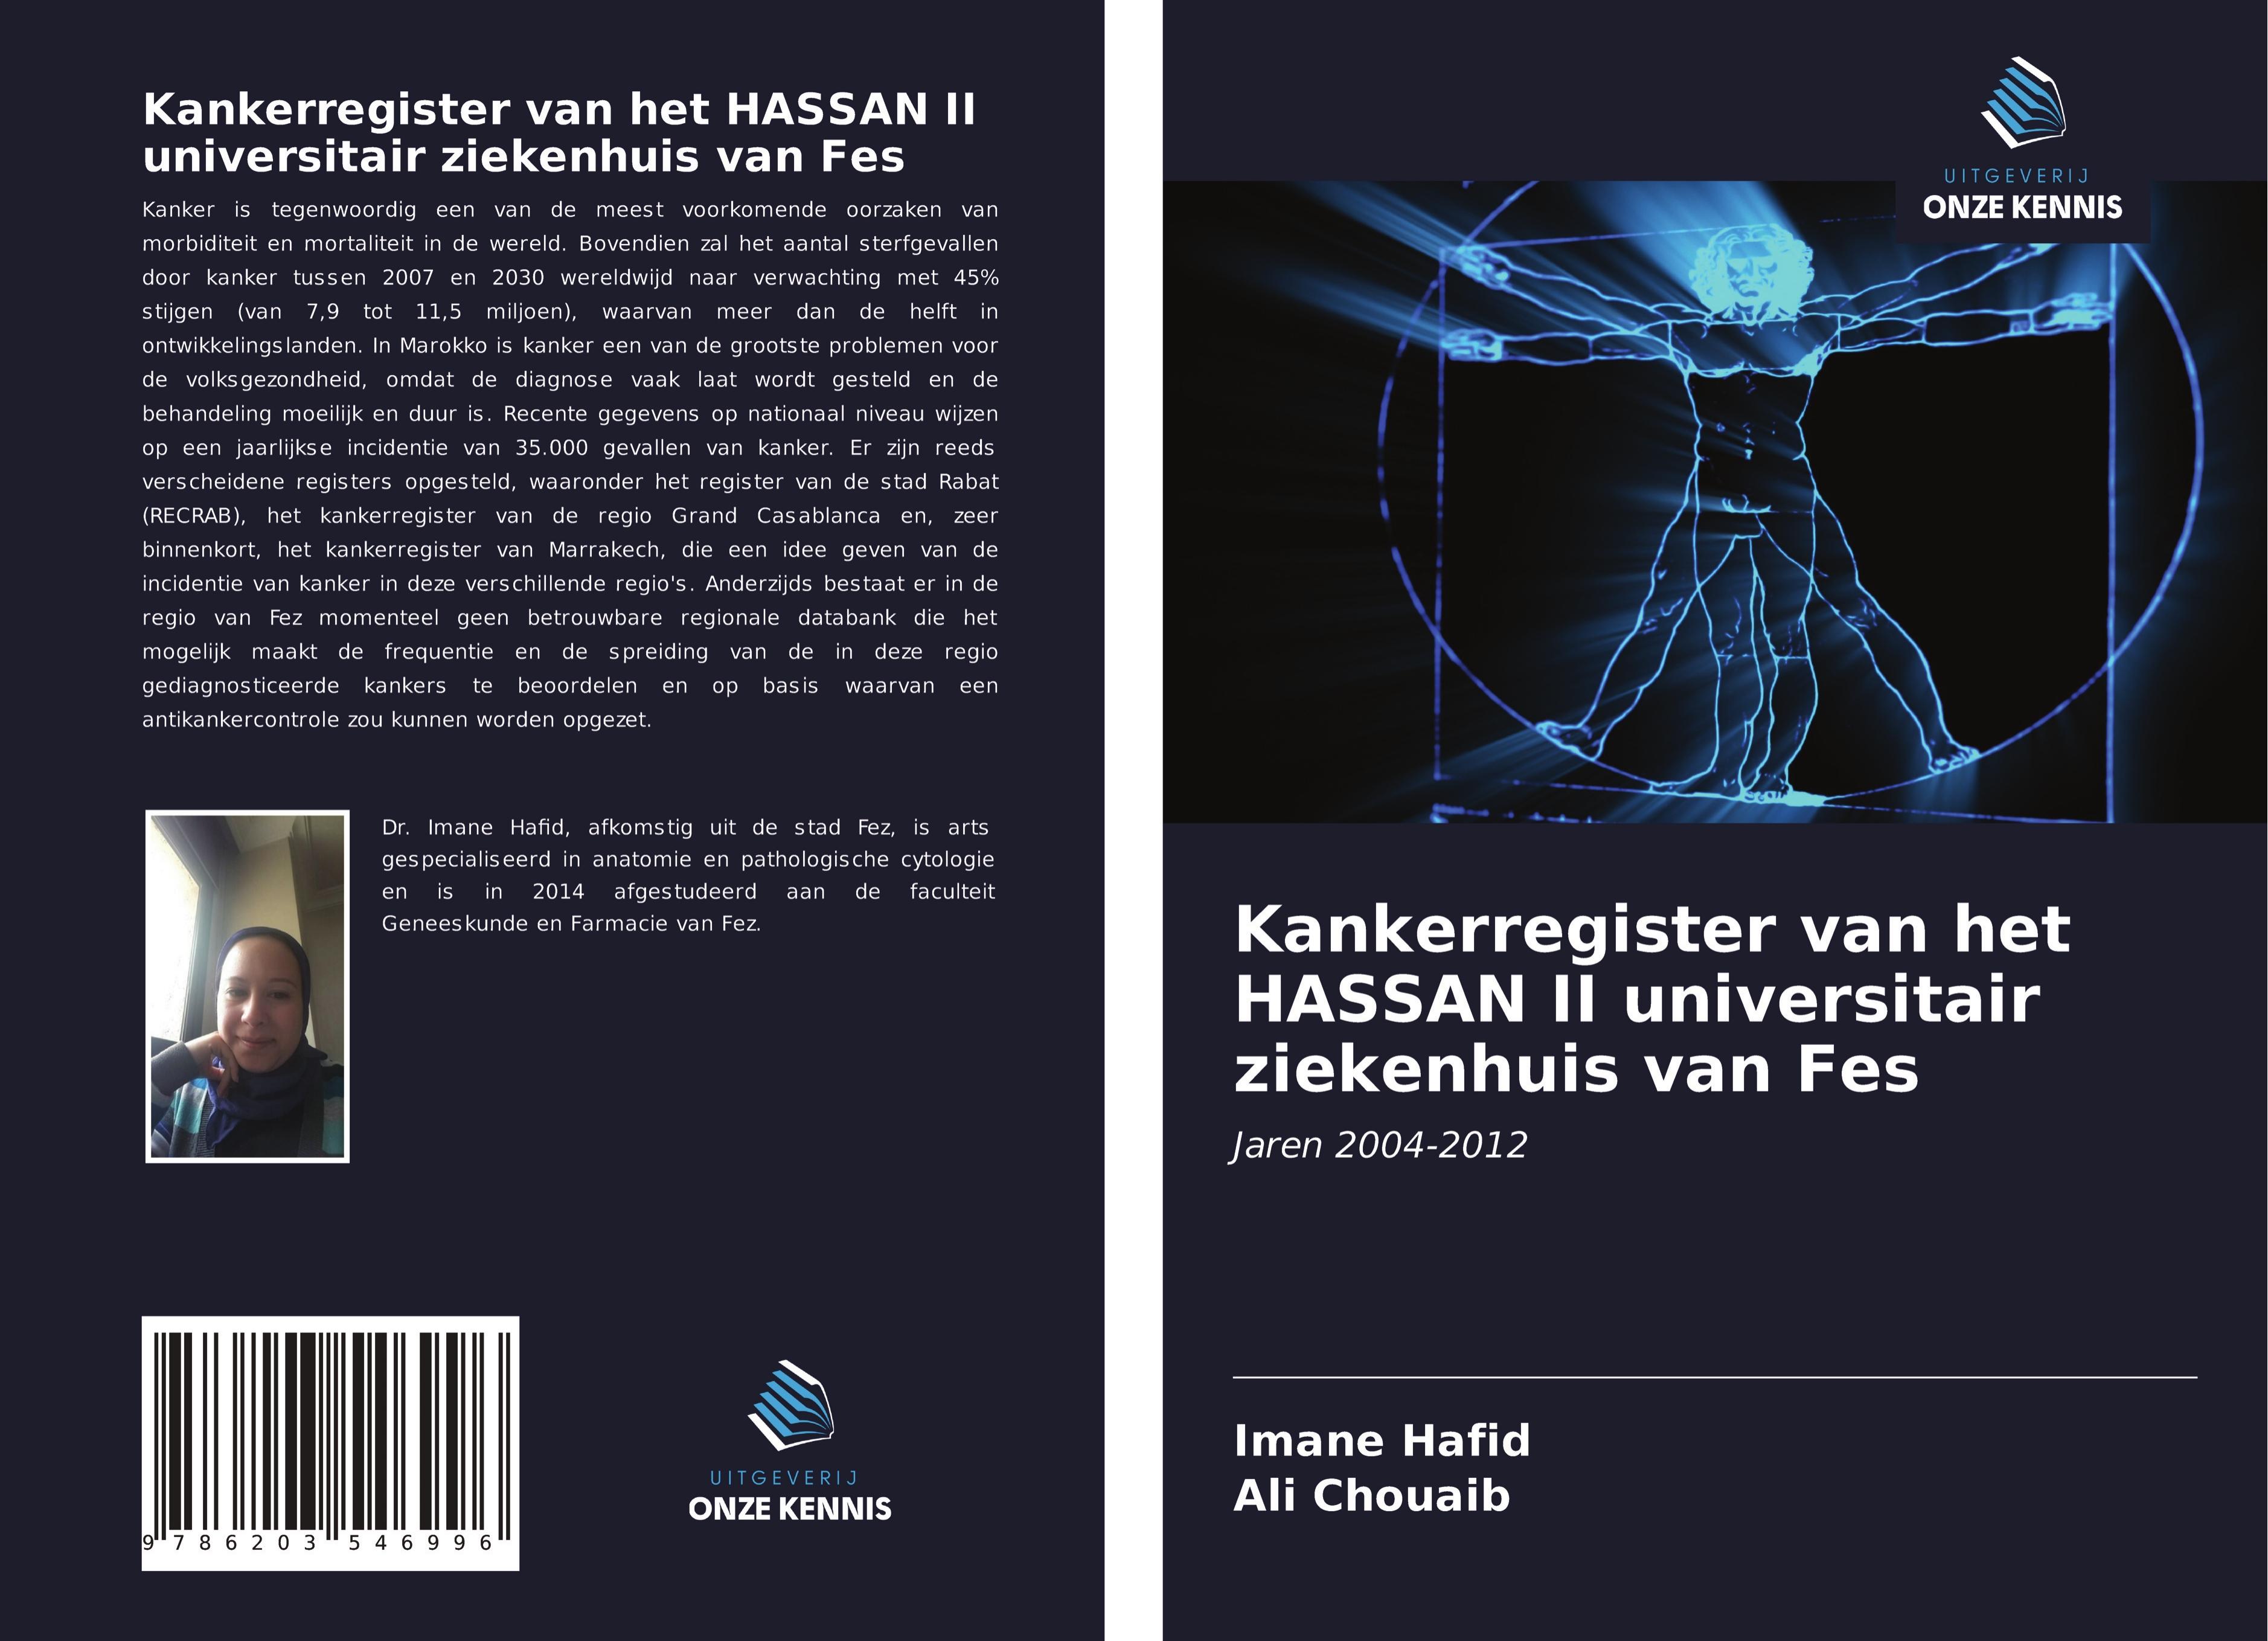 Kankerregister van het HASSAN II universitair ziekenhuis van Fes